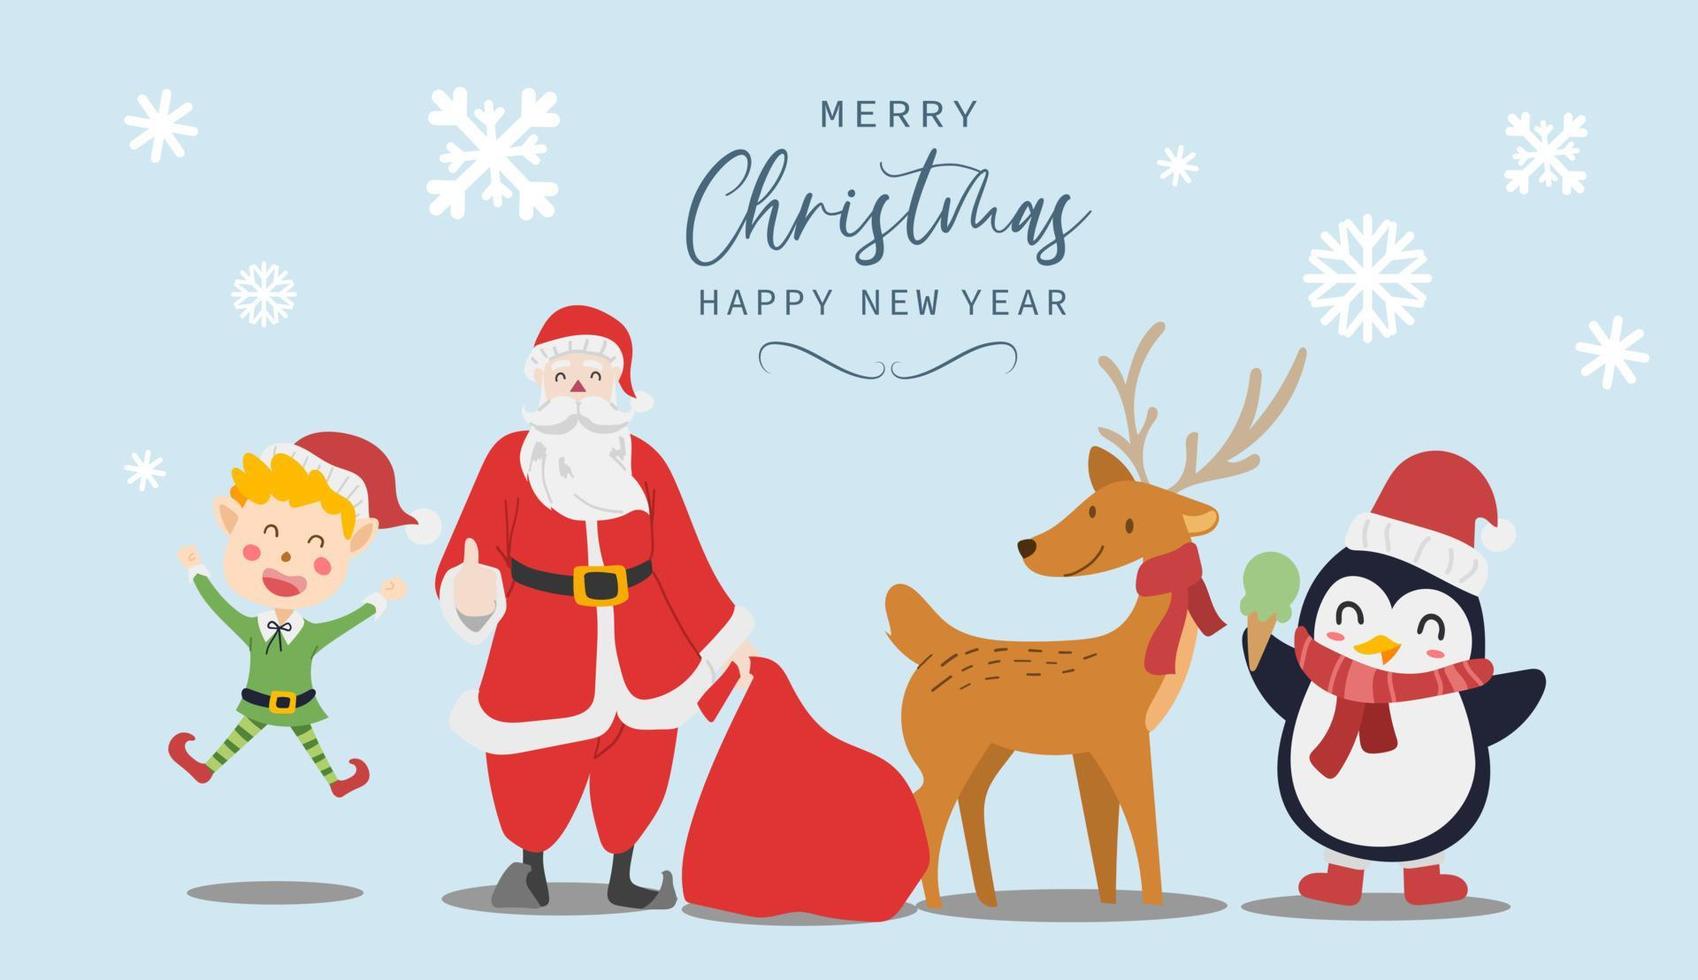 auguri di buon natale e felice anno nuovo. simpatici personaggi dei cartoni animati di babbo natale, pinguino, renna e costume da elfo. illustrazione vettoriale